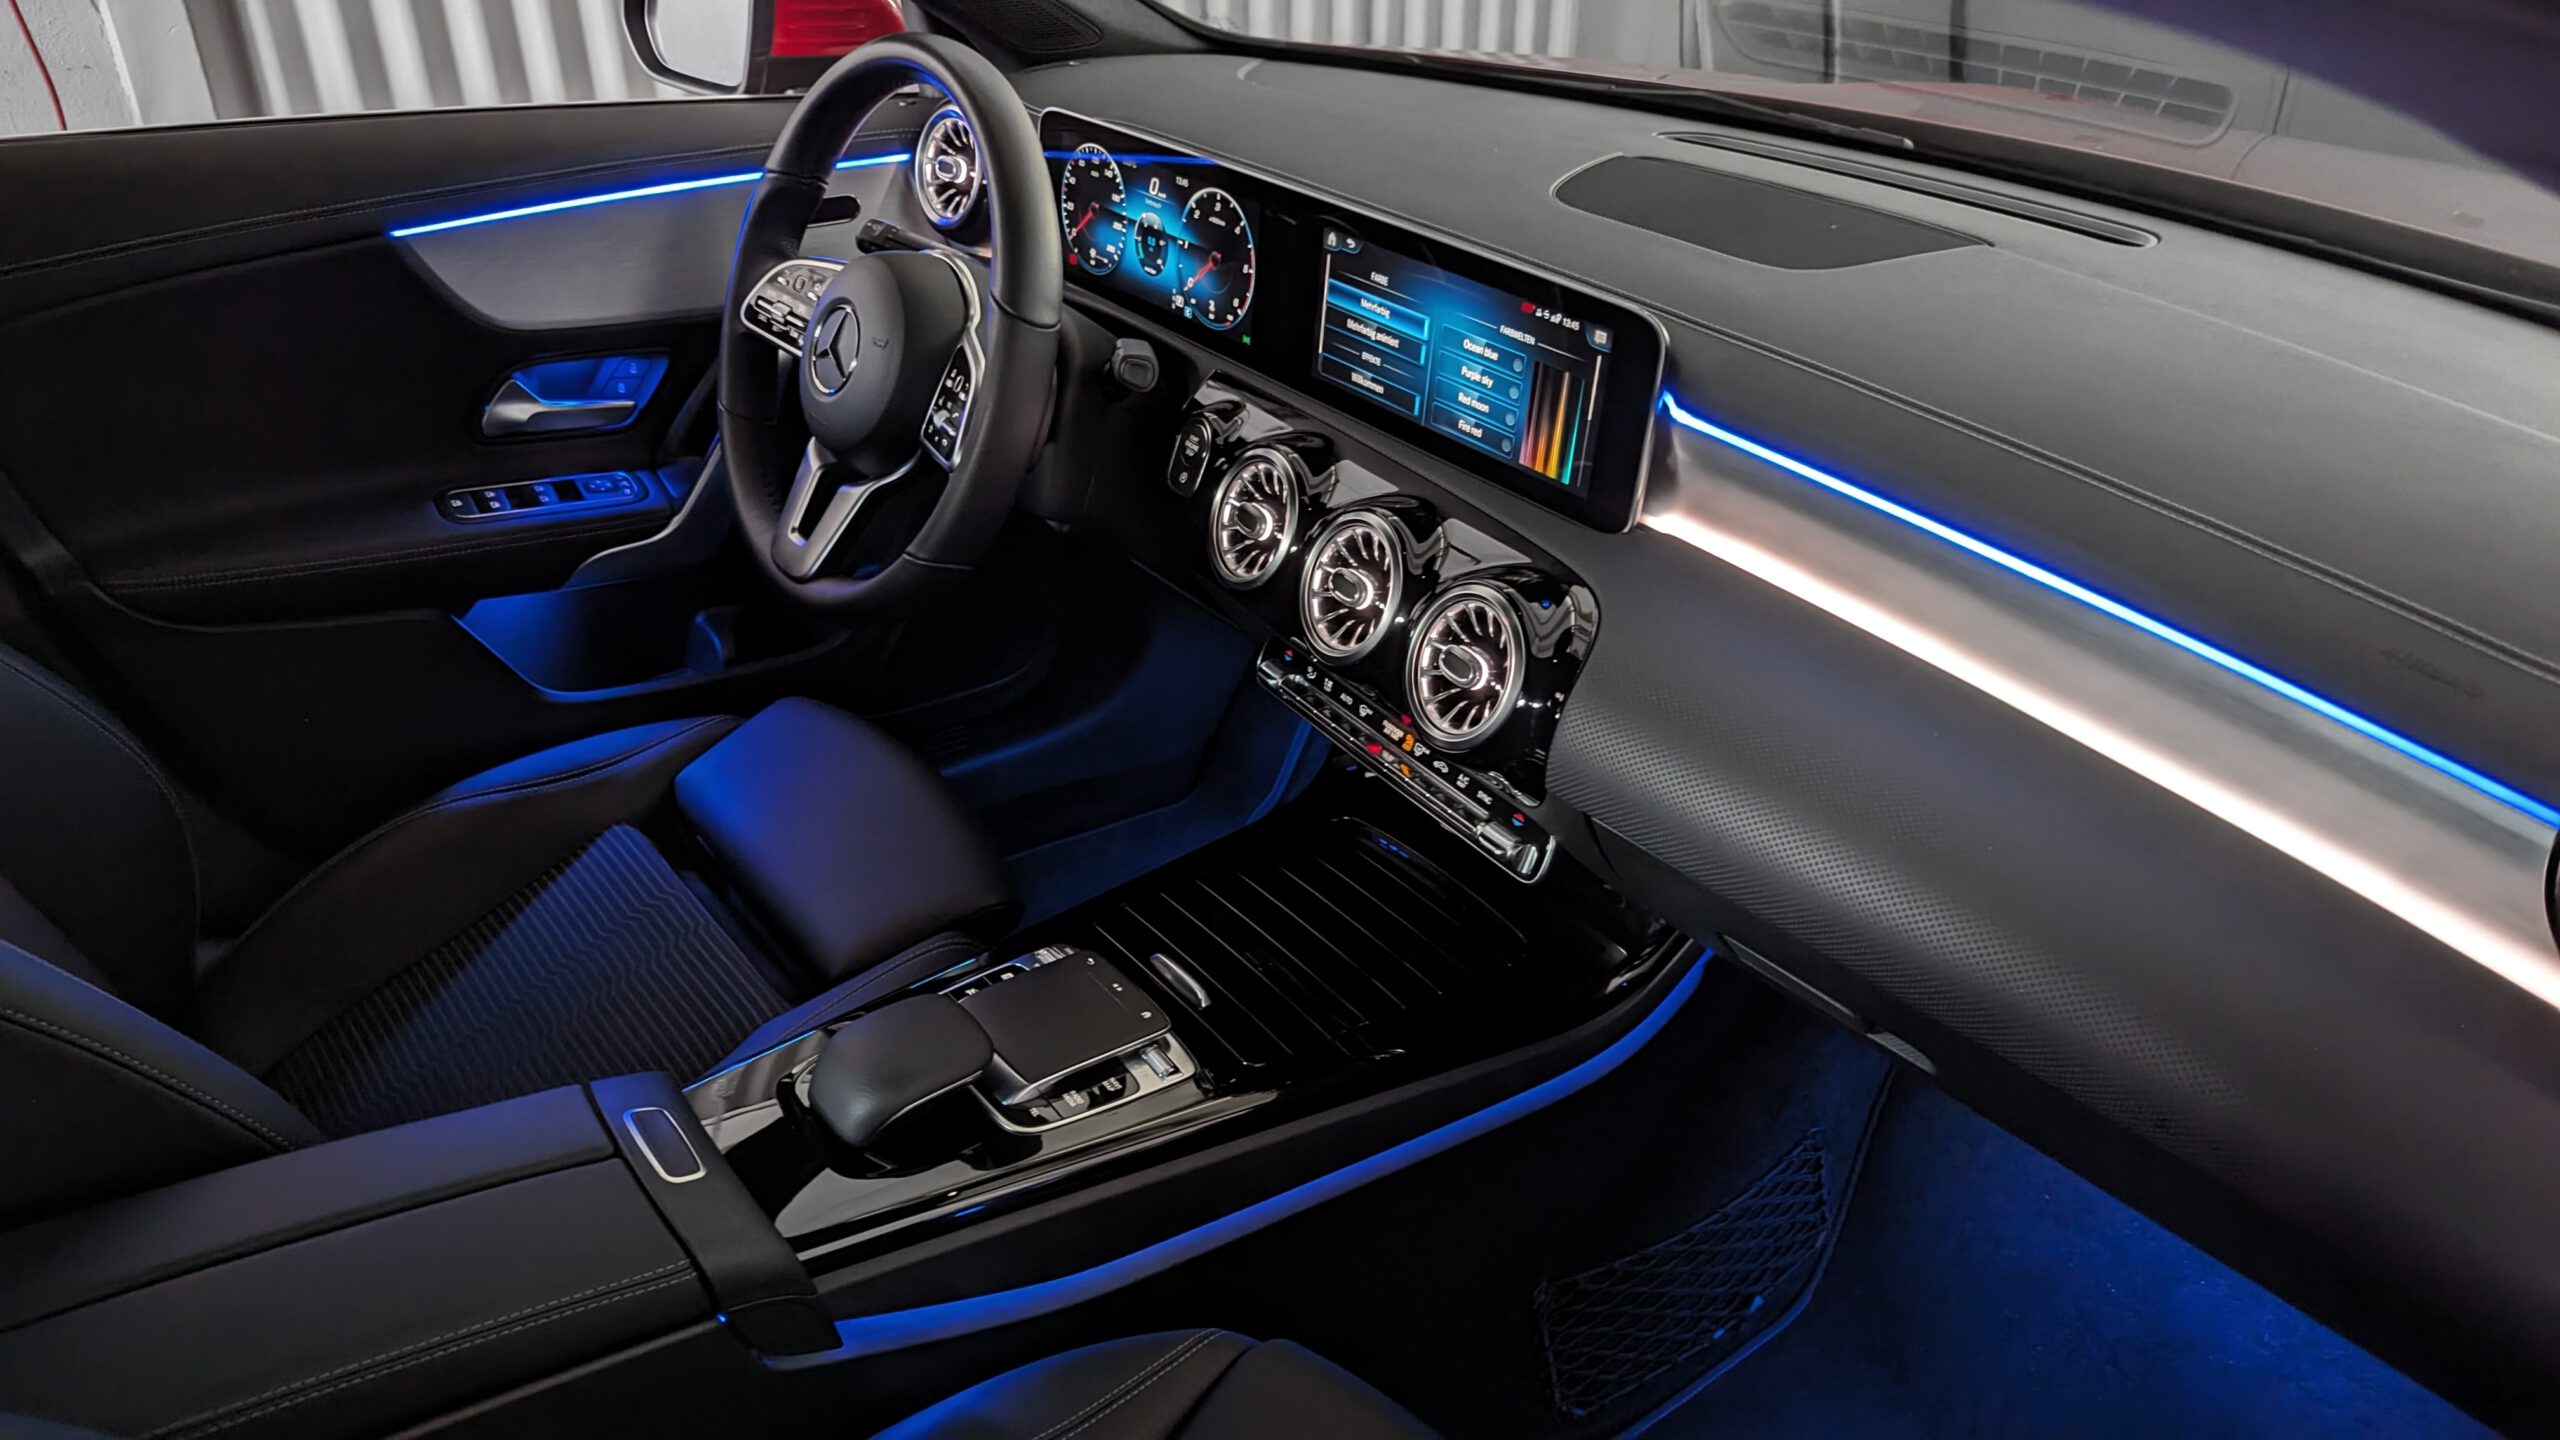 Blau LED Streifen Auto Innenraum Mittelkonsole Ambientebeleuchtung  Lichtleiste